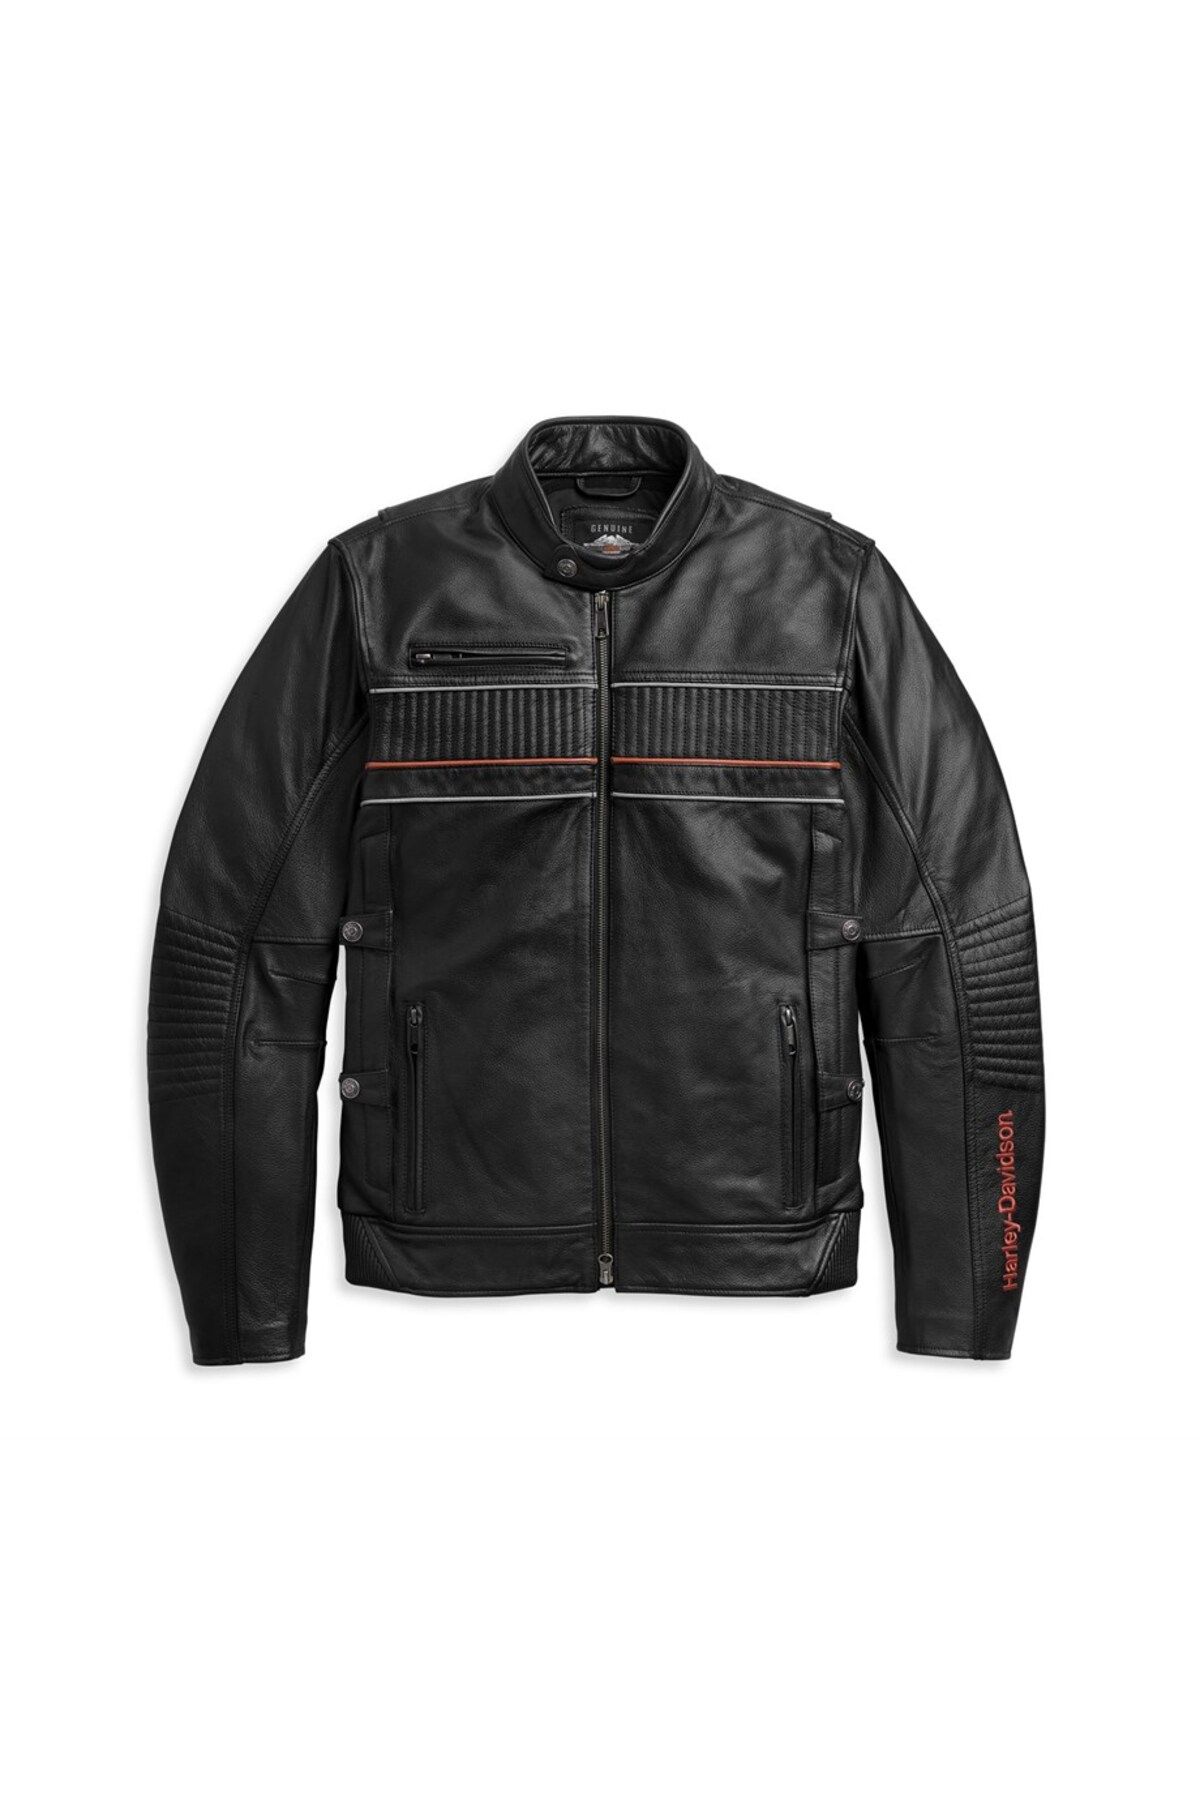 Harley Davidson Harley-davidson Men's I-94 Leather Jacket